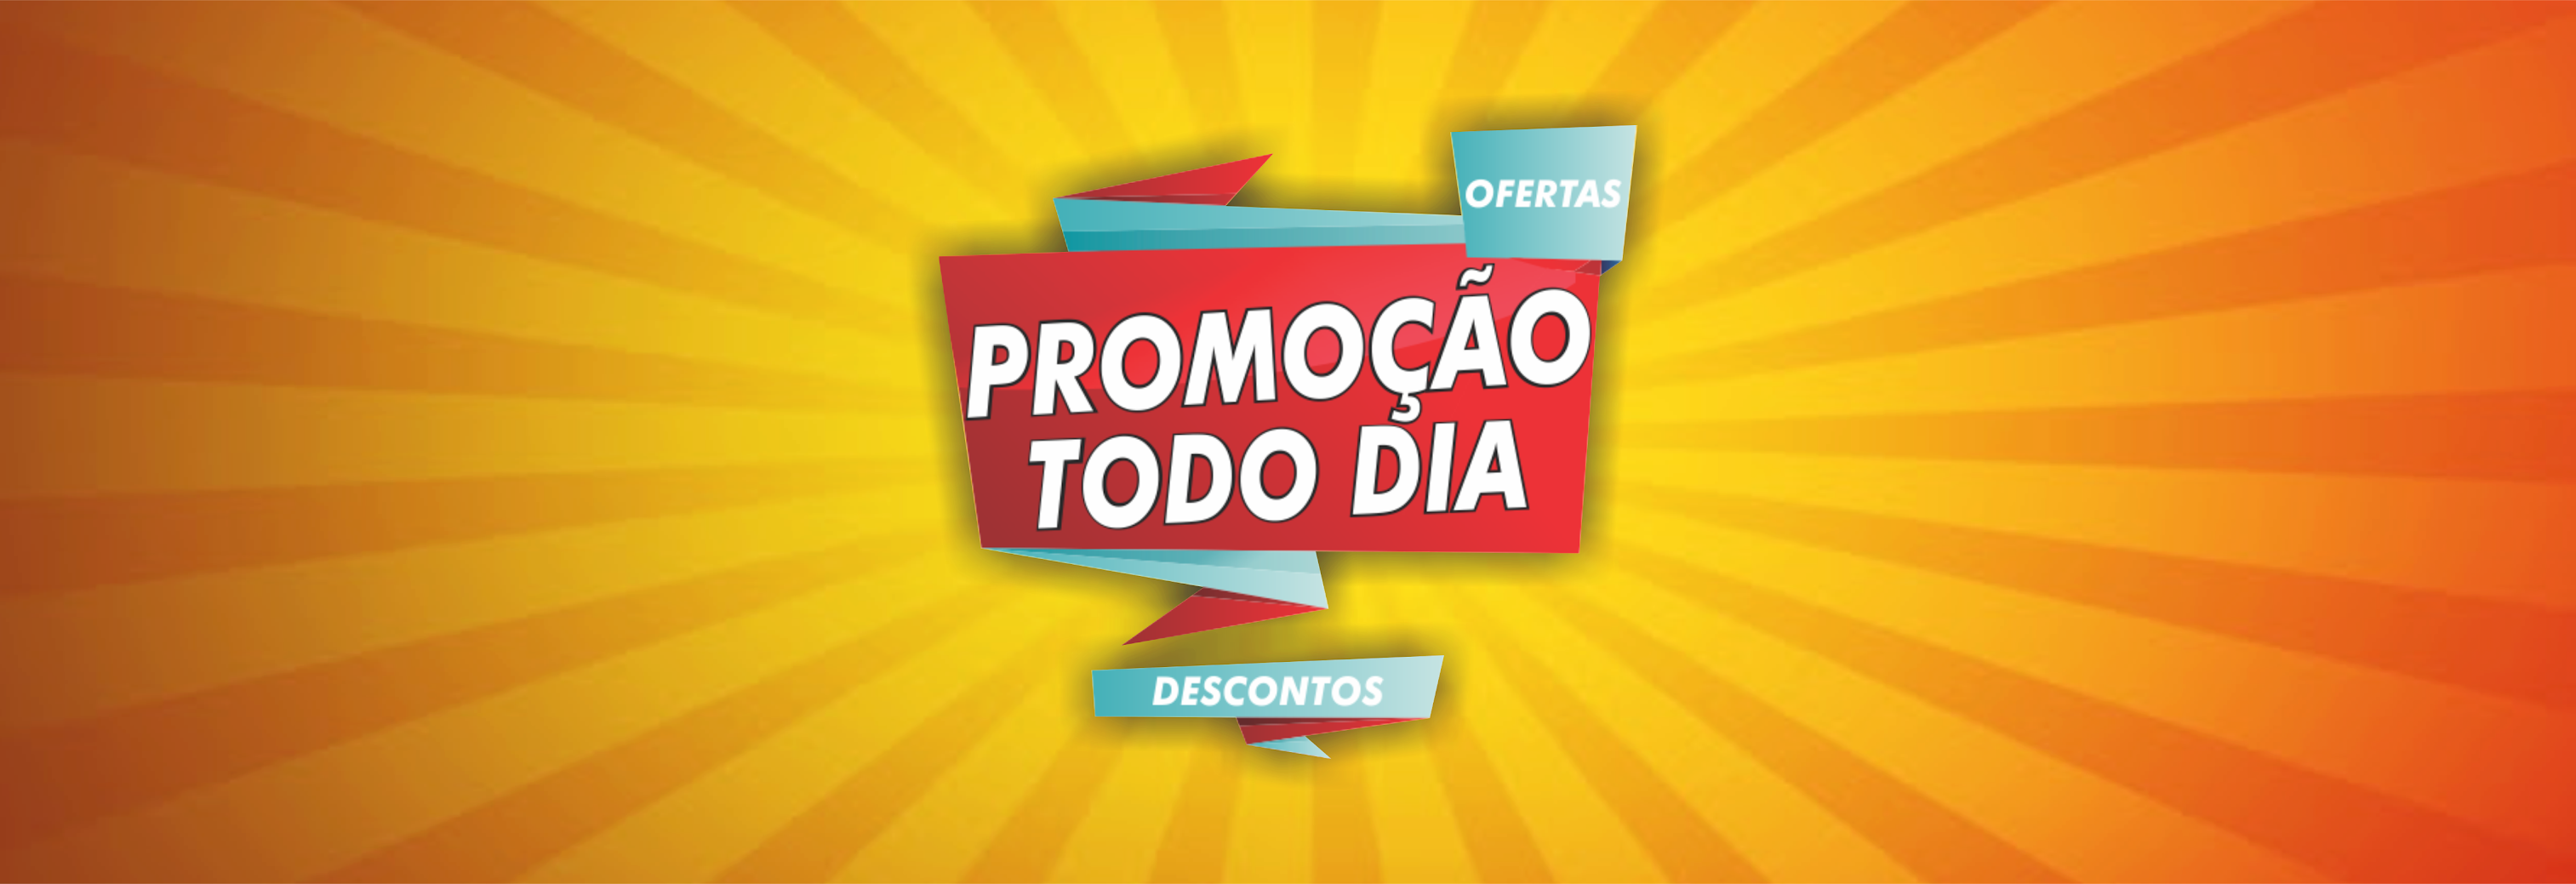 Grupo TecMundo Ofertas: promoções diárias no WhatsApp e Telegram - TecMundo